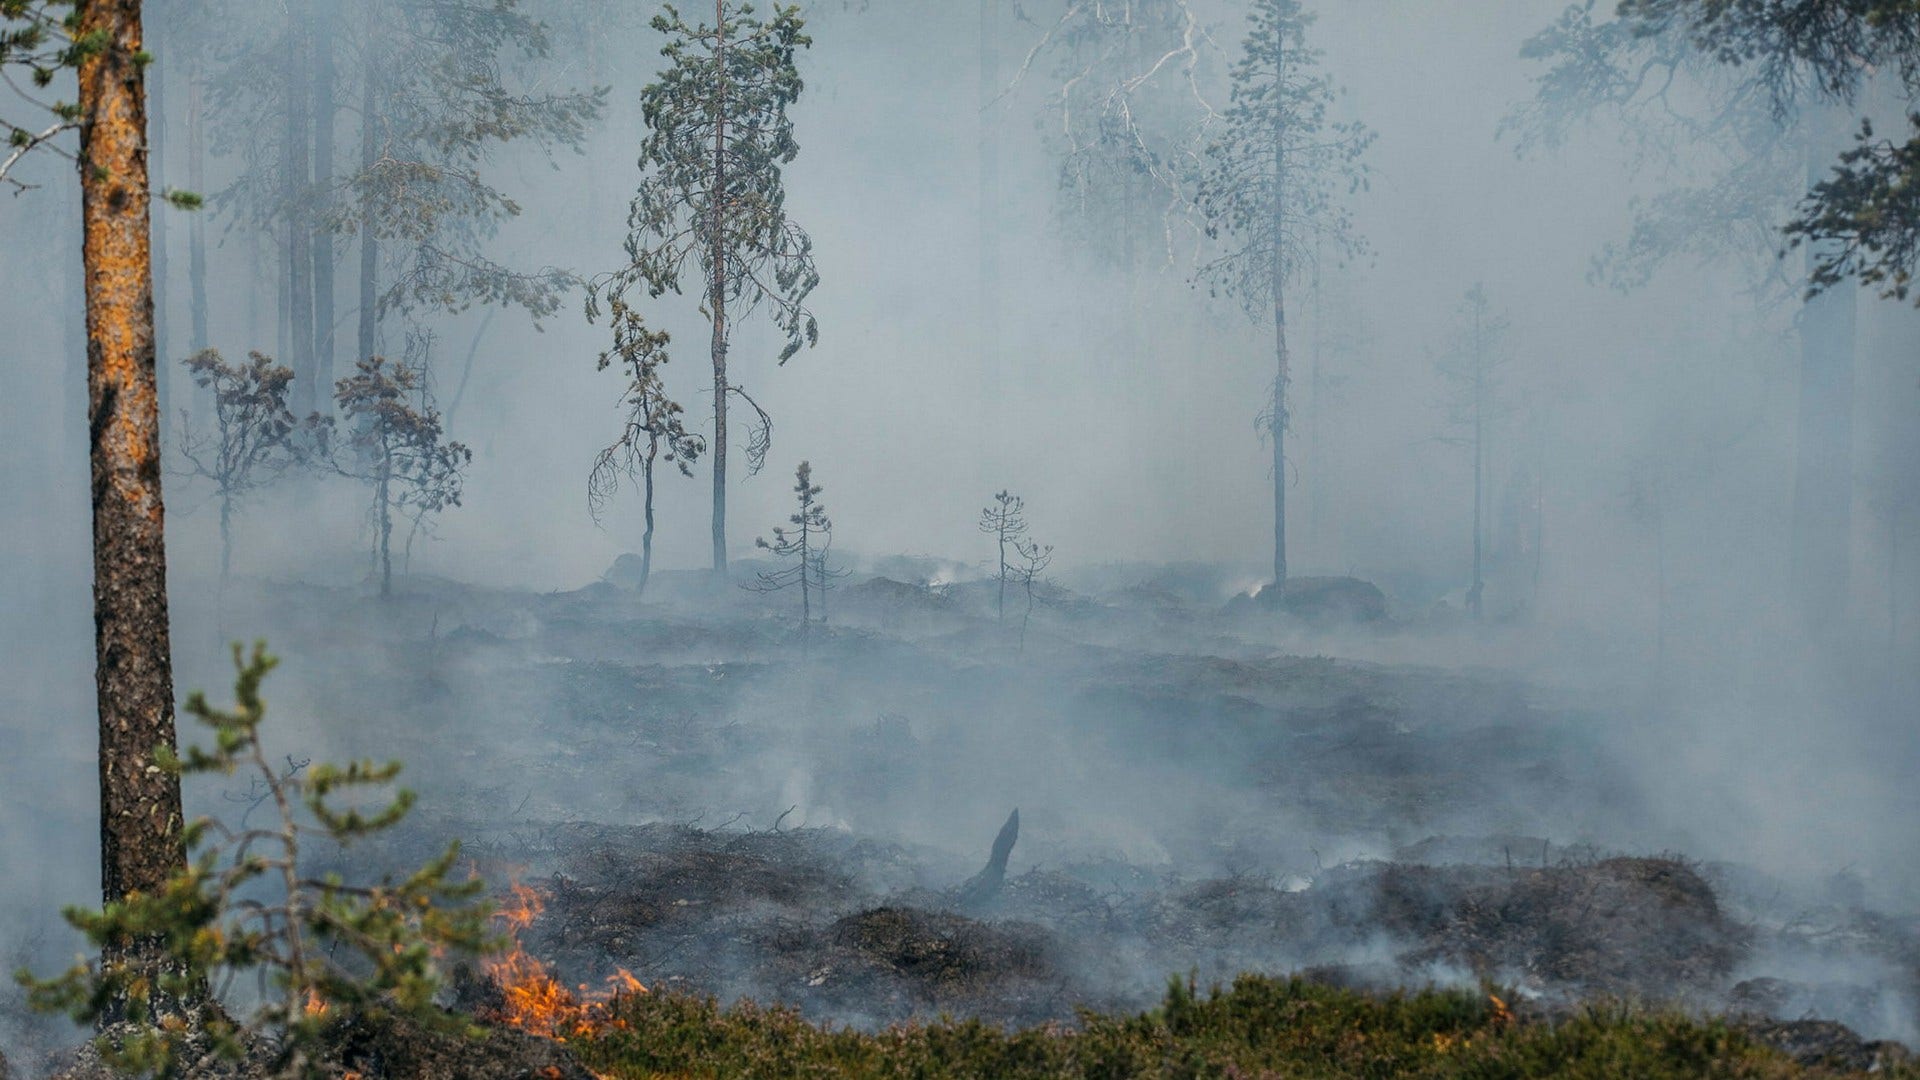 Skogsbrand i Älvdalen under den heta och torra sommaren 2018. Nu varnas det åter för skogsbränder, vilket är extra känsligt i Sverige med utbredda områden av kalhyggen, menar insändarskribenten.